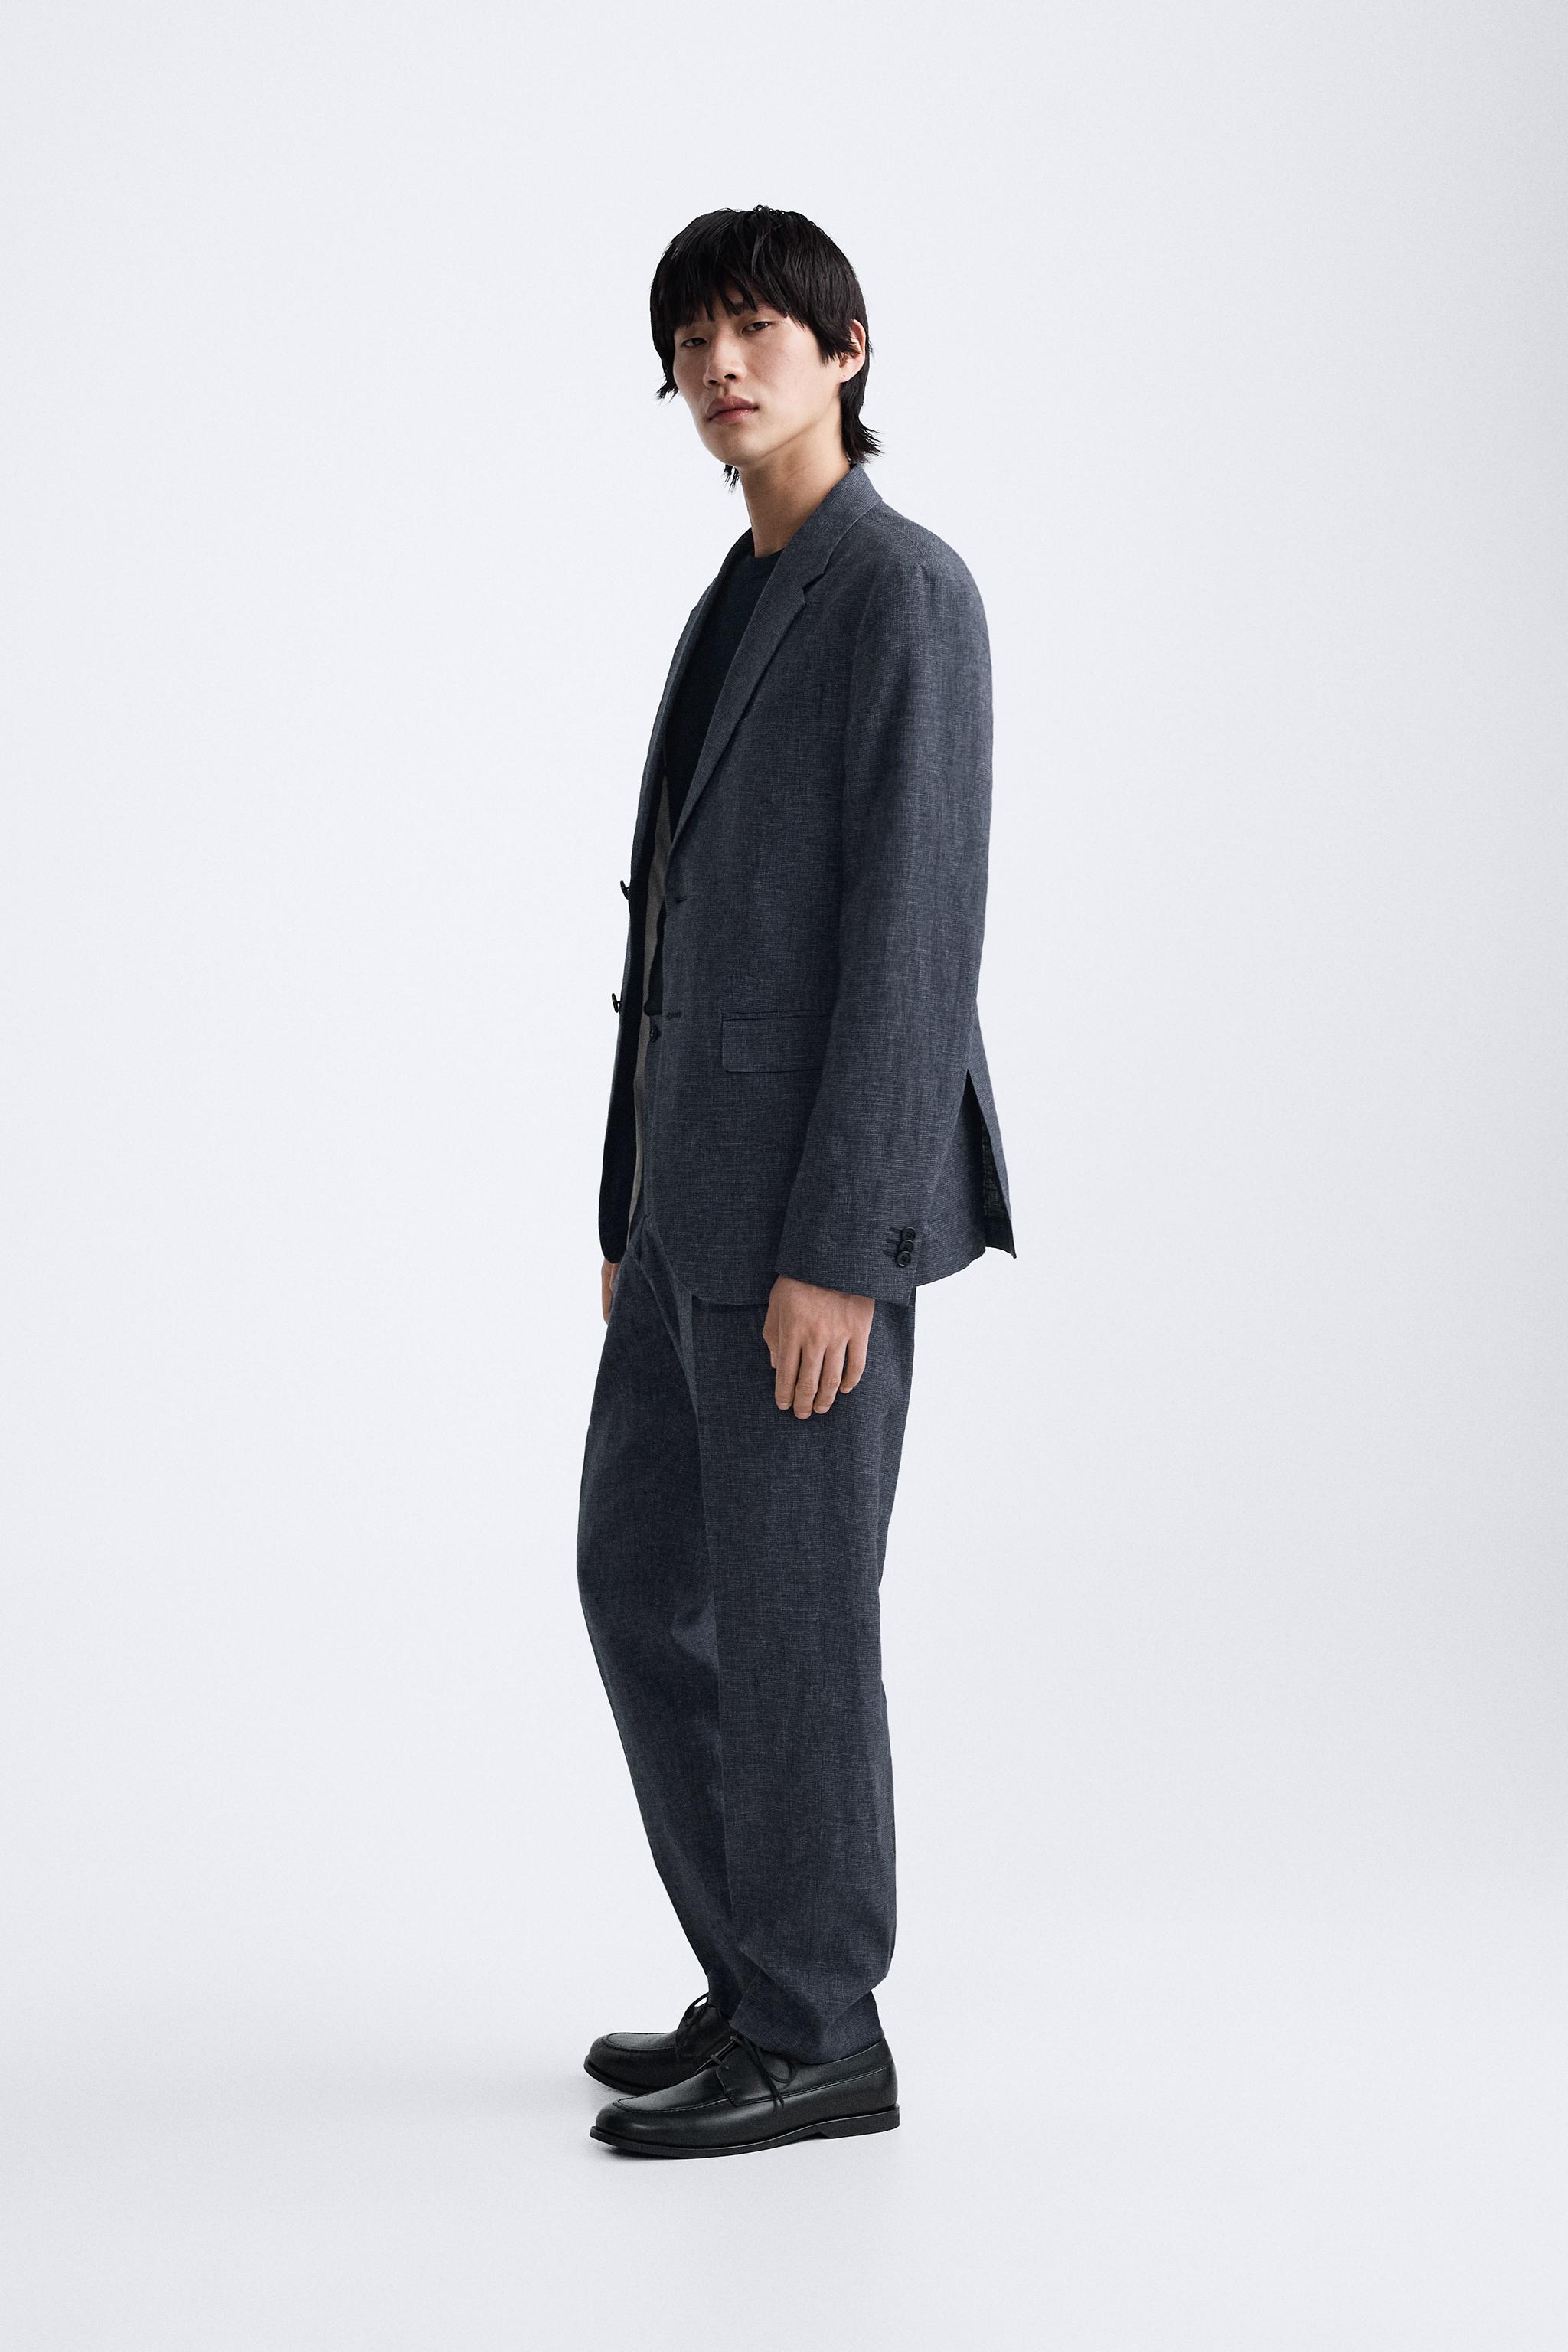 ブルー & ネイビースーツ | メンズ | 最新コレクション | ZARA 日本